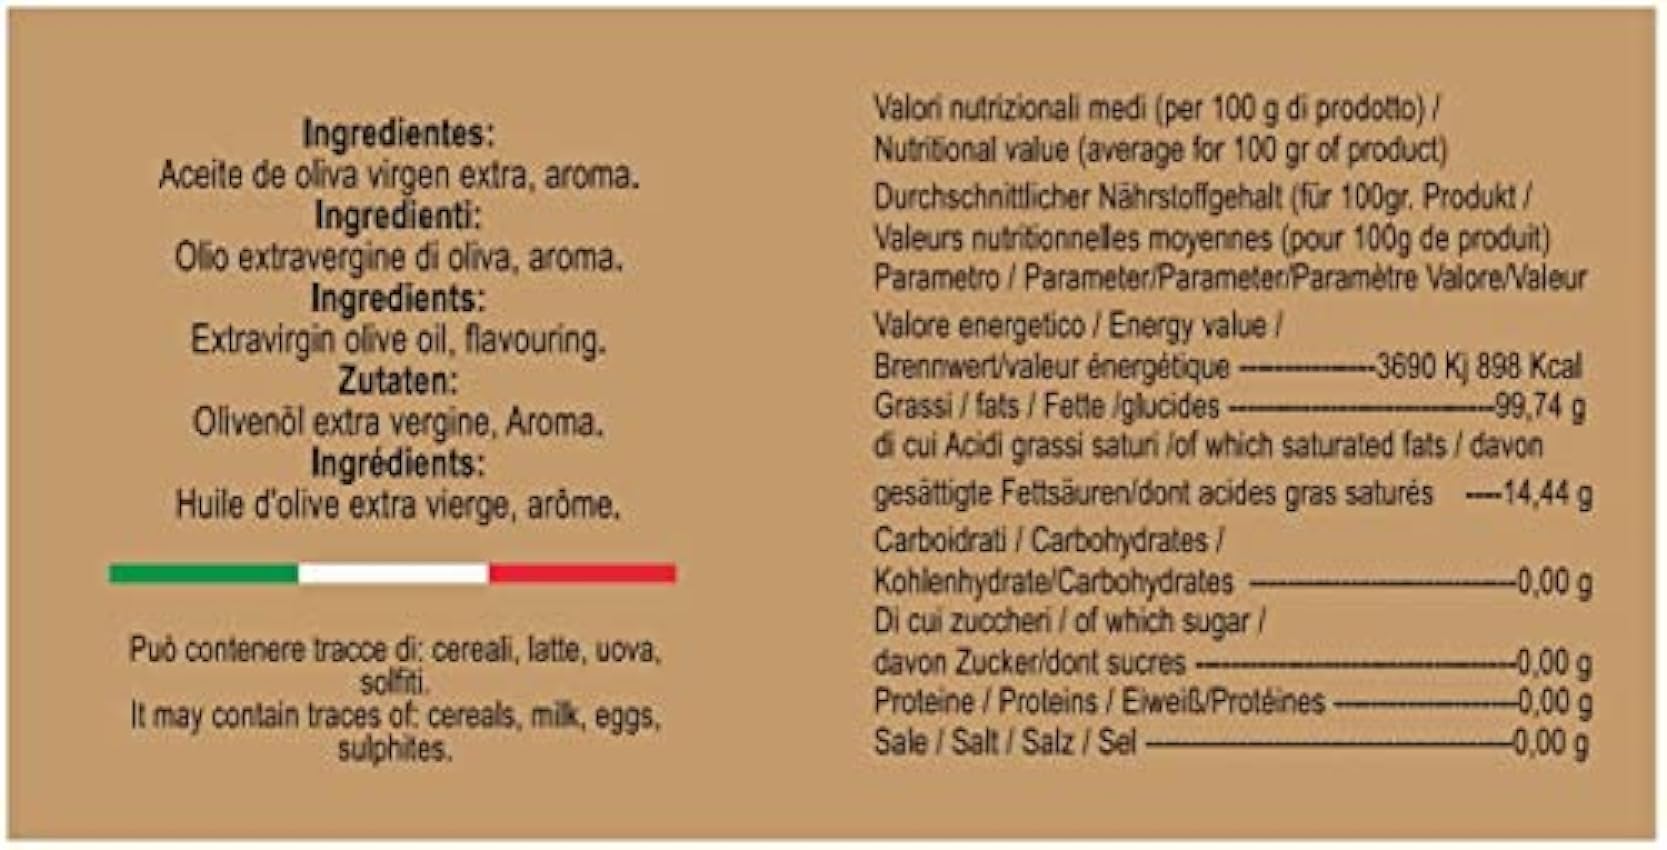 aBeiou Aceite de Trufa Blanca 250ml producto extra gourmet 100% italiano aceite de oliva virgen extra aromatizado con trufa blanca artesano vegano vegetariano ideal regalos y cocinar nOS14vWk